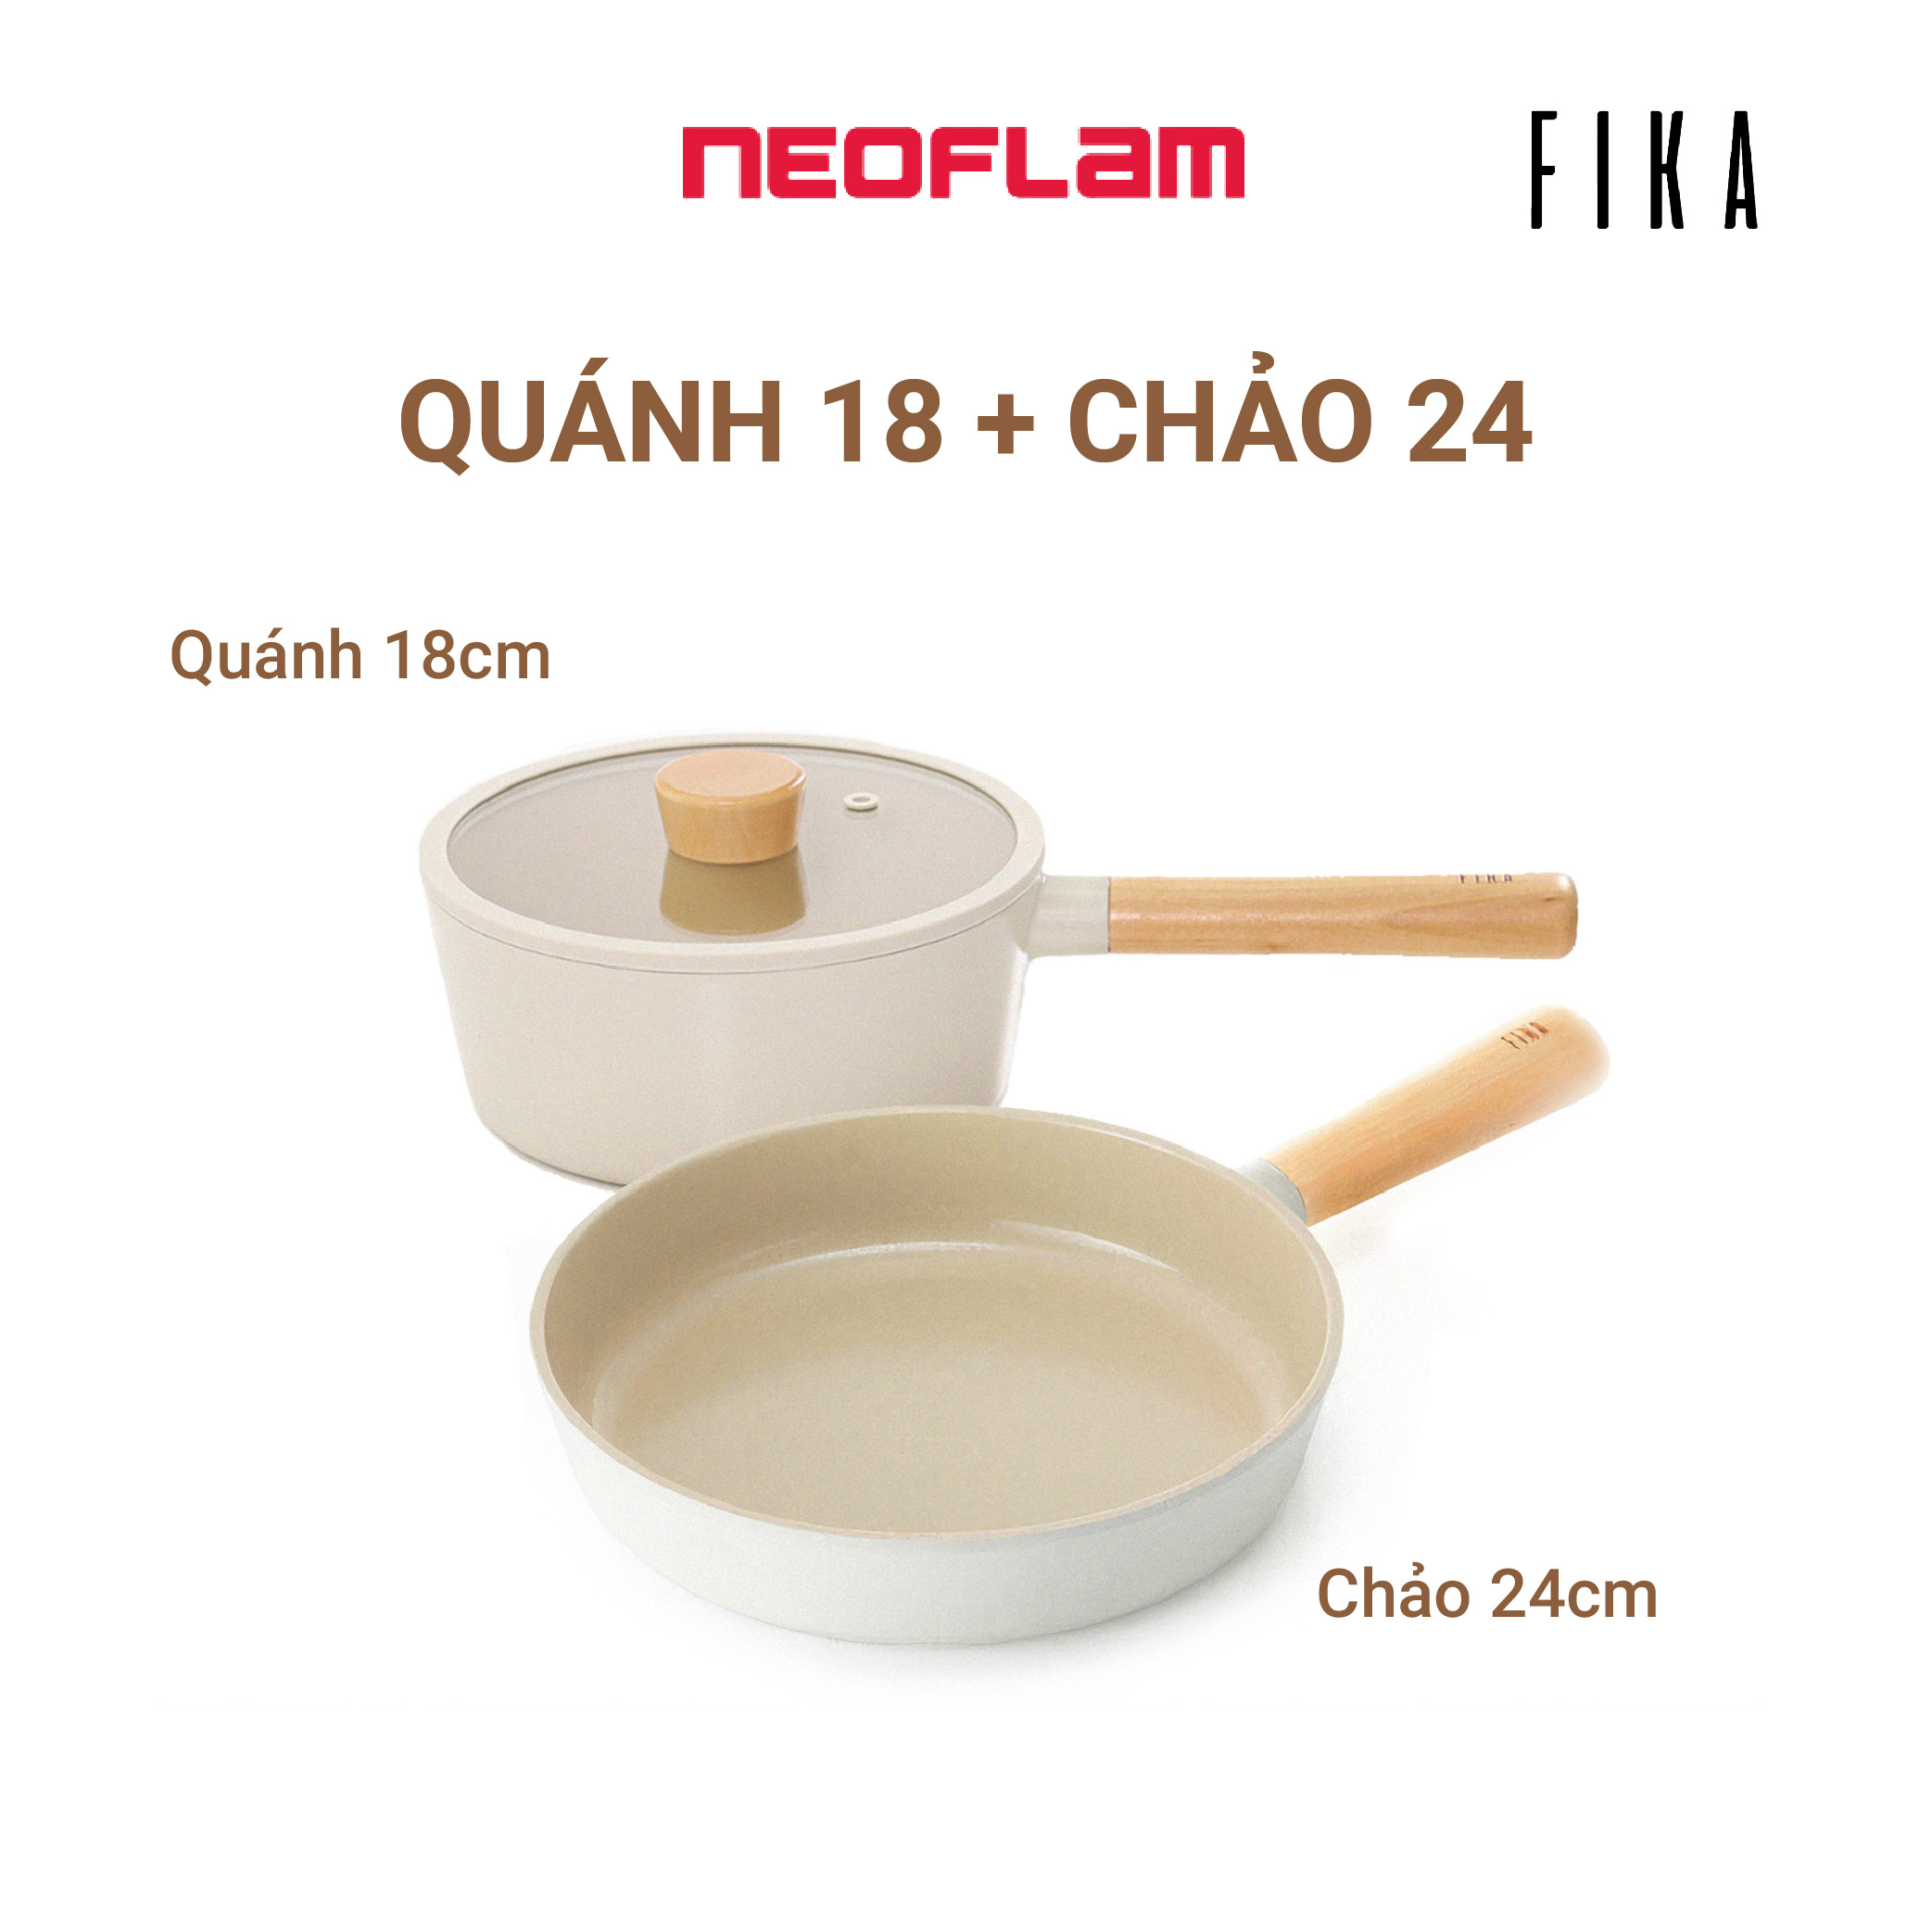 Hình ảnh [Hàng chính hãng] Bộ 2 nồi, chảo chống dính bếp từ FIKA NEOFLAM: Nồi sâu (quánh)18cm & Chảo chiên 24cm. Made in Korea